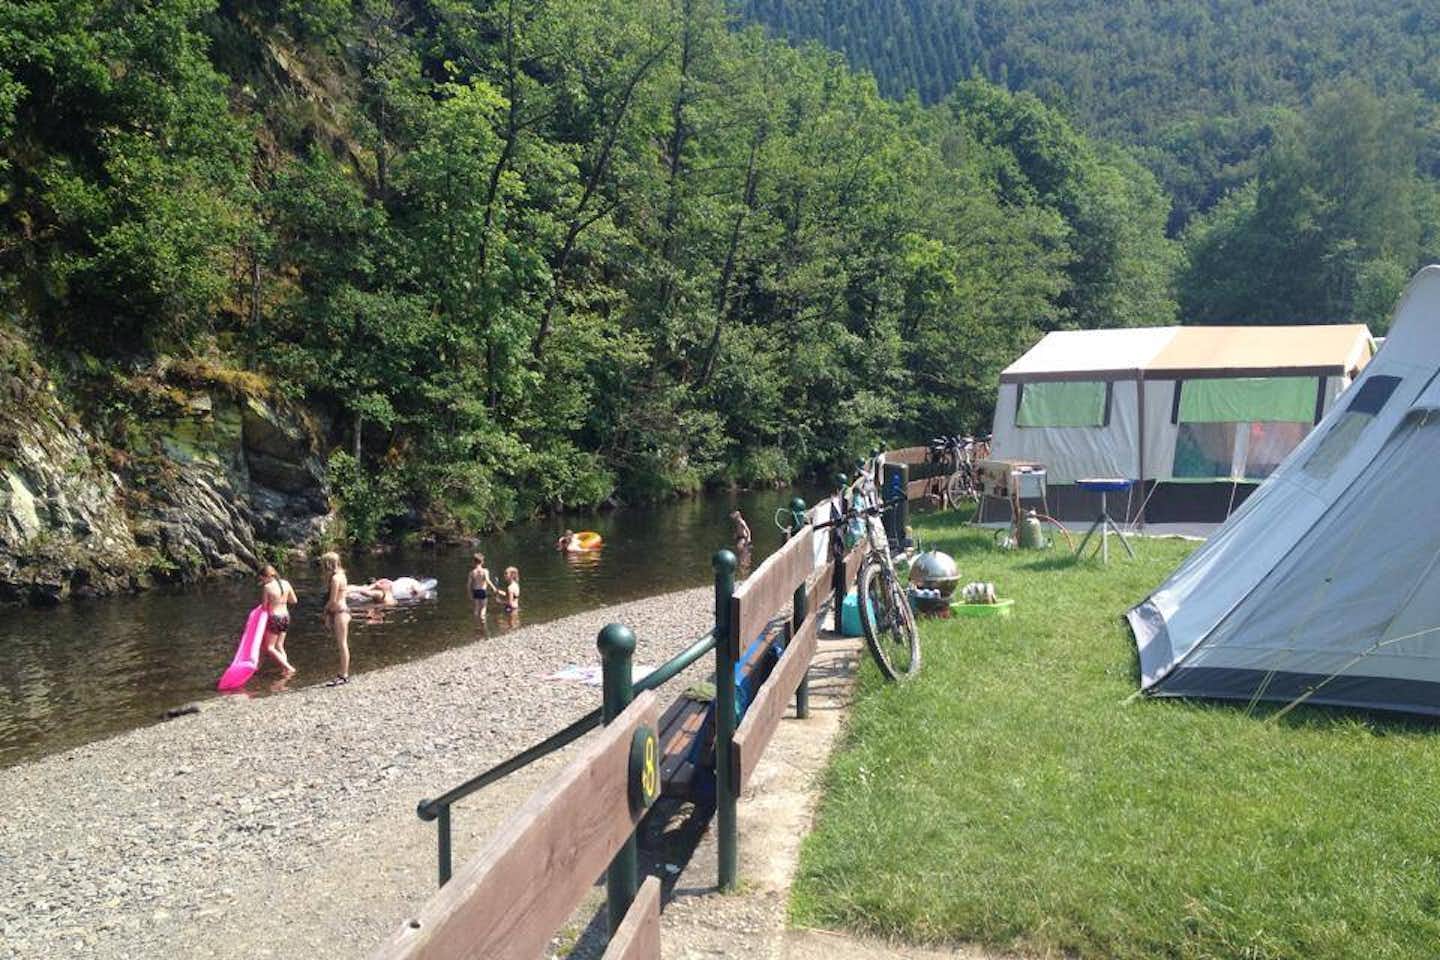 Camp Hammer - Stellplätze direkt an der Rur auf dem Campingplatz am Nationalpark Eifel